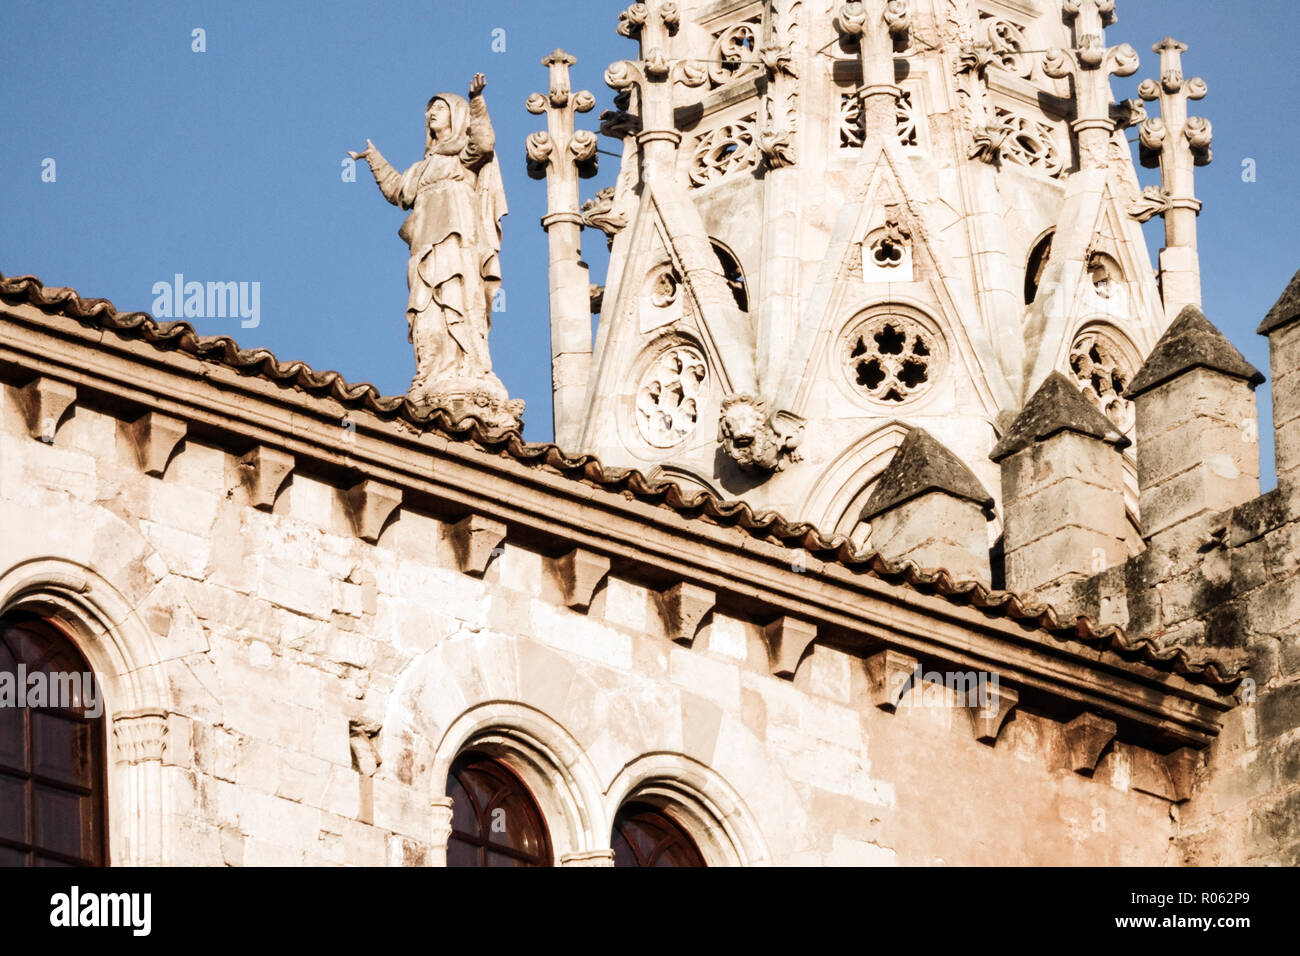 Cathédrale de la Seu Cathédrale de Palma de Majorque, détail de la statue de Sainte Marie, Espagne cathédrales Banque D'Images